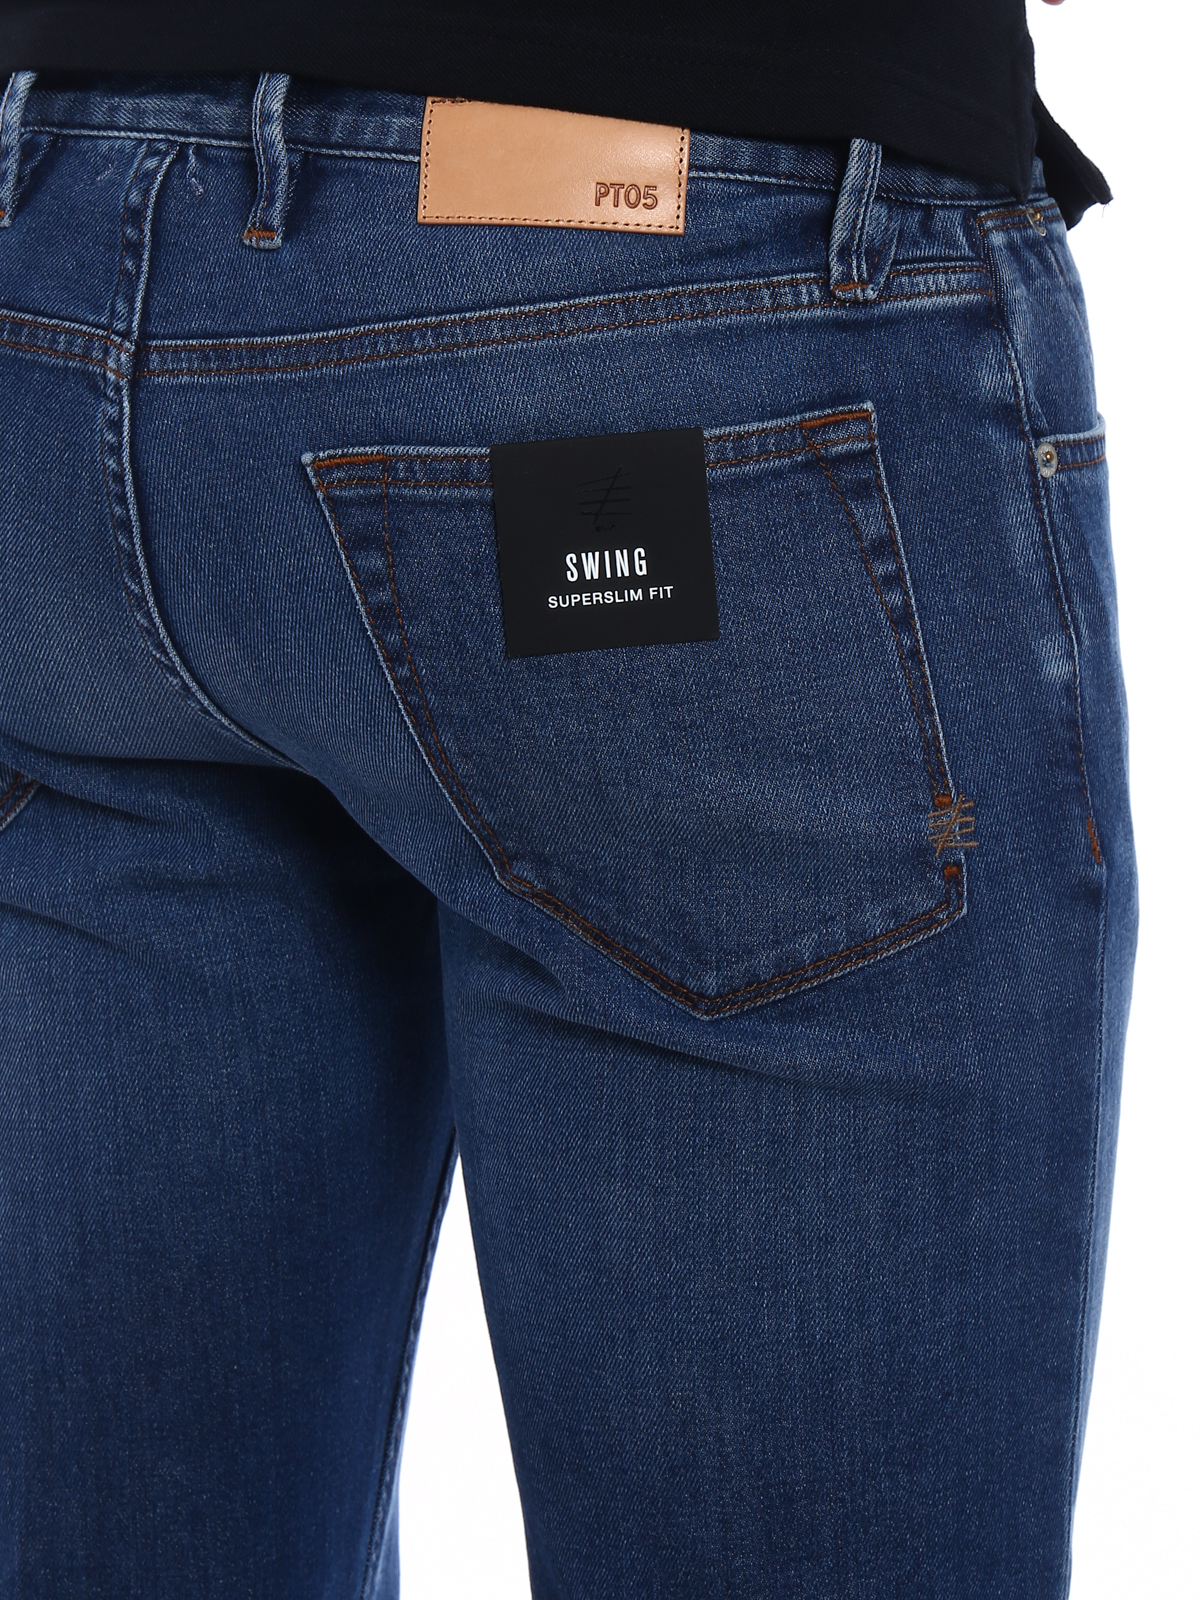 Straight leg jeans Pt Torino - Swing super fit denim C6DJ25Z20MINTX04MD49